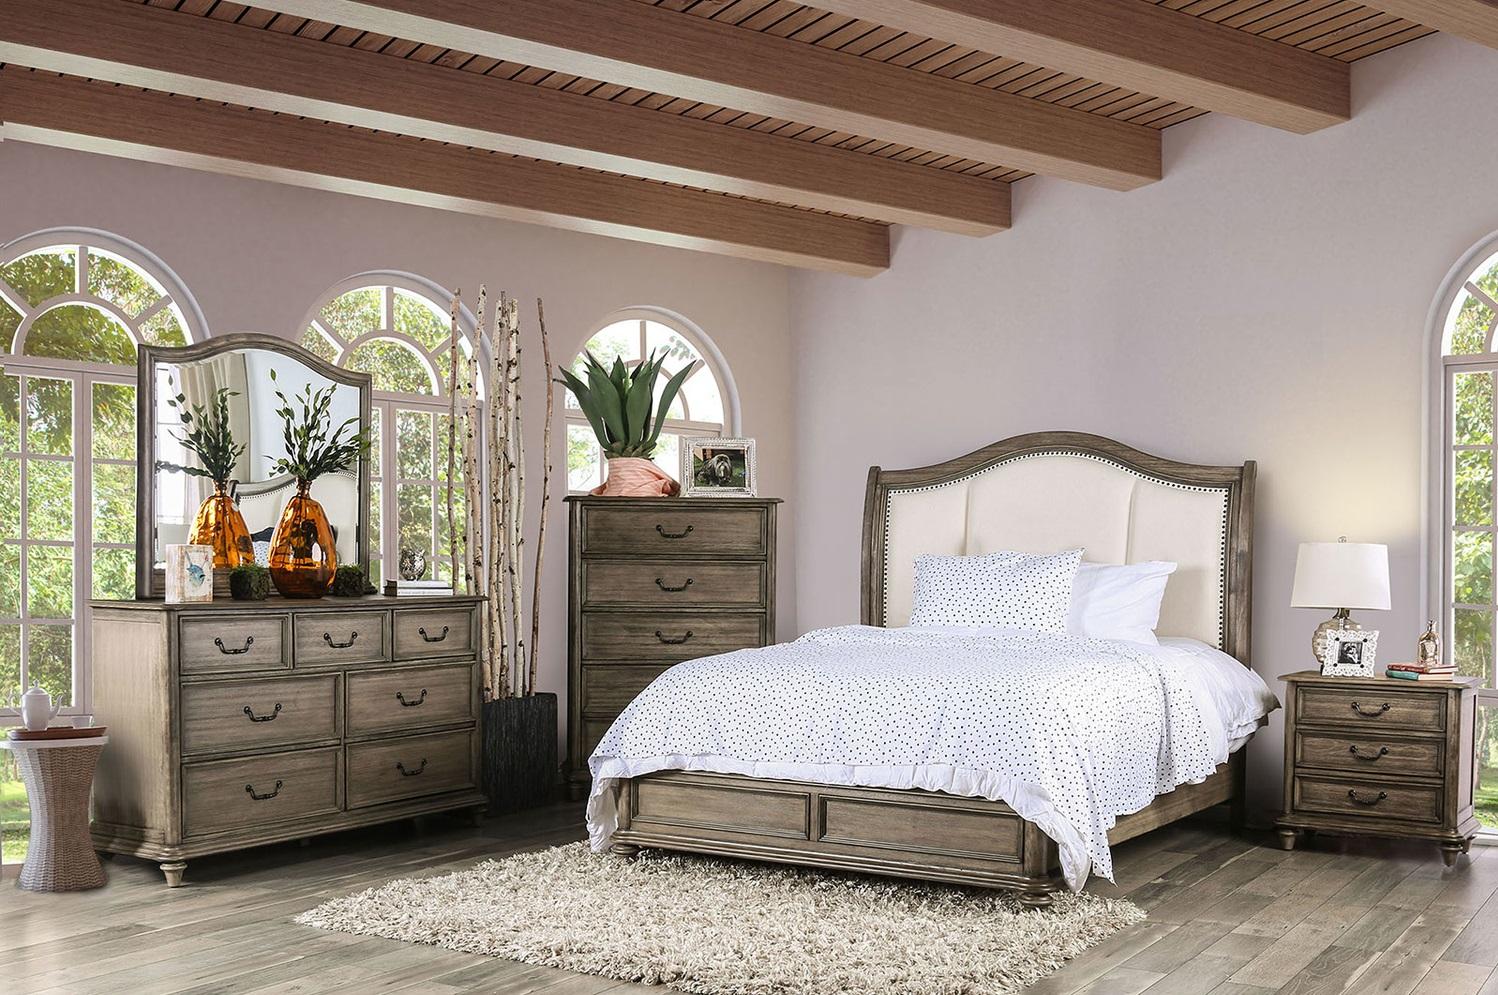 

    
Rustic Natural & Ivory Solid Wood Queen Bedroom Set 6pcs Furniture of America CM7612-Q Belgrade
